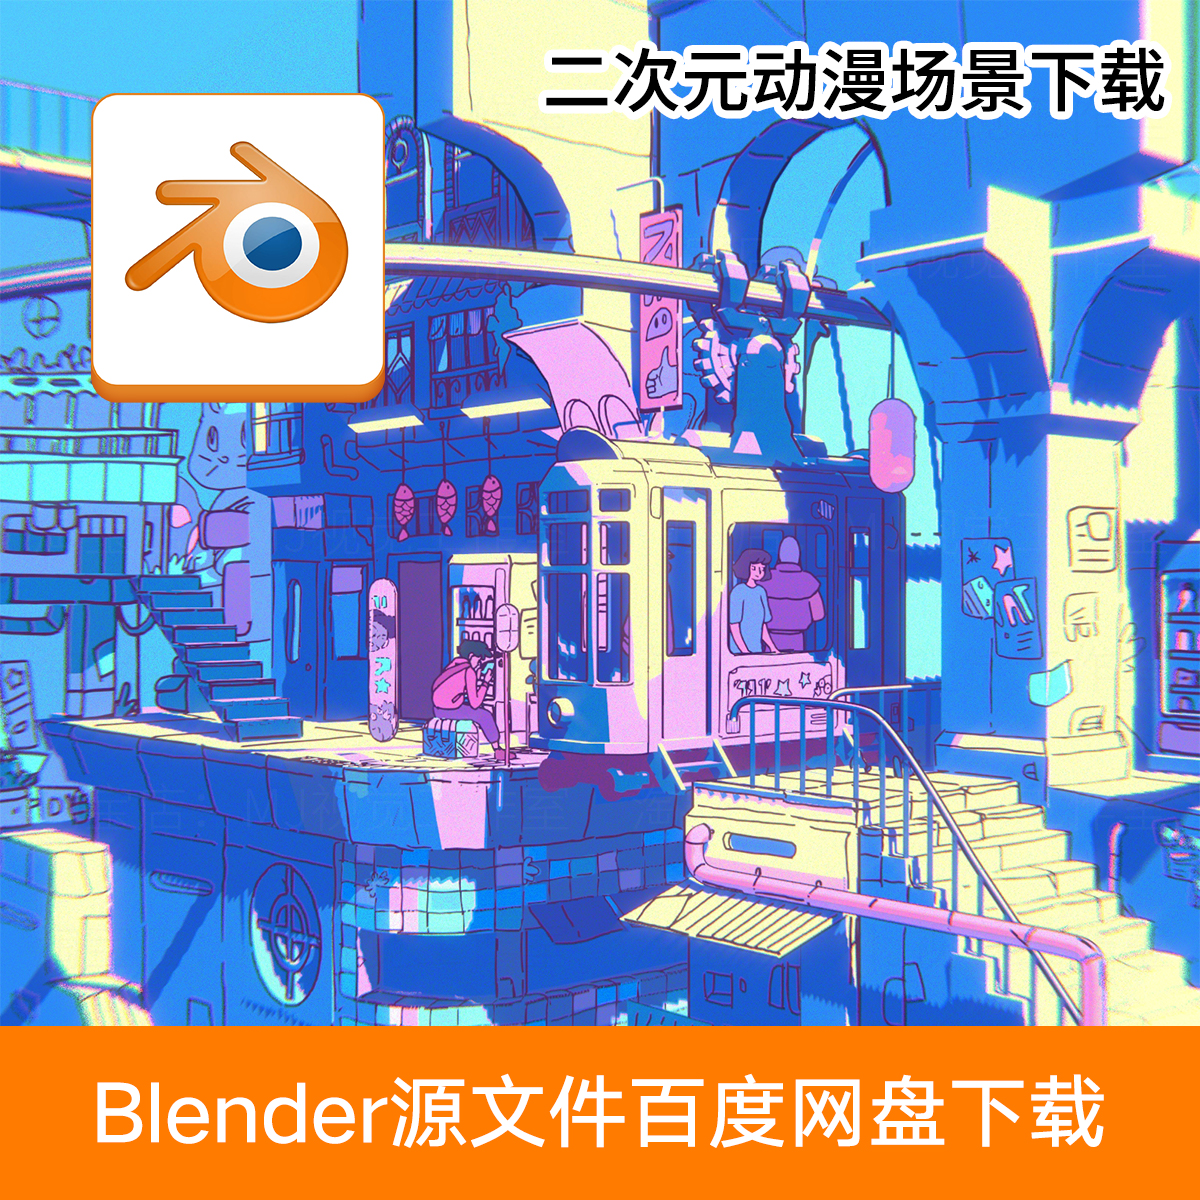 Blender二次元动漫插画风格3D日本城市交通场景源文件下载722